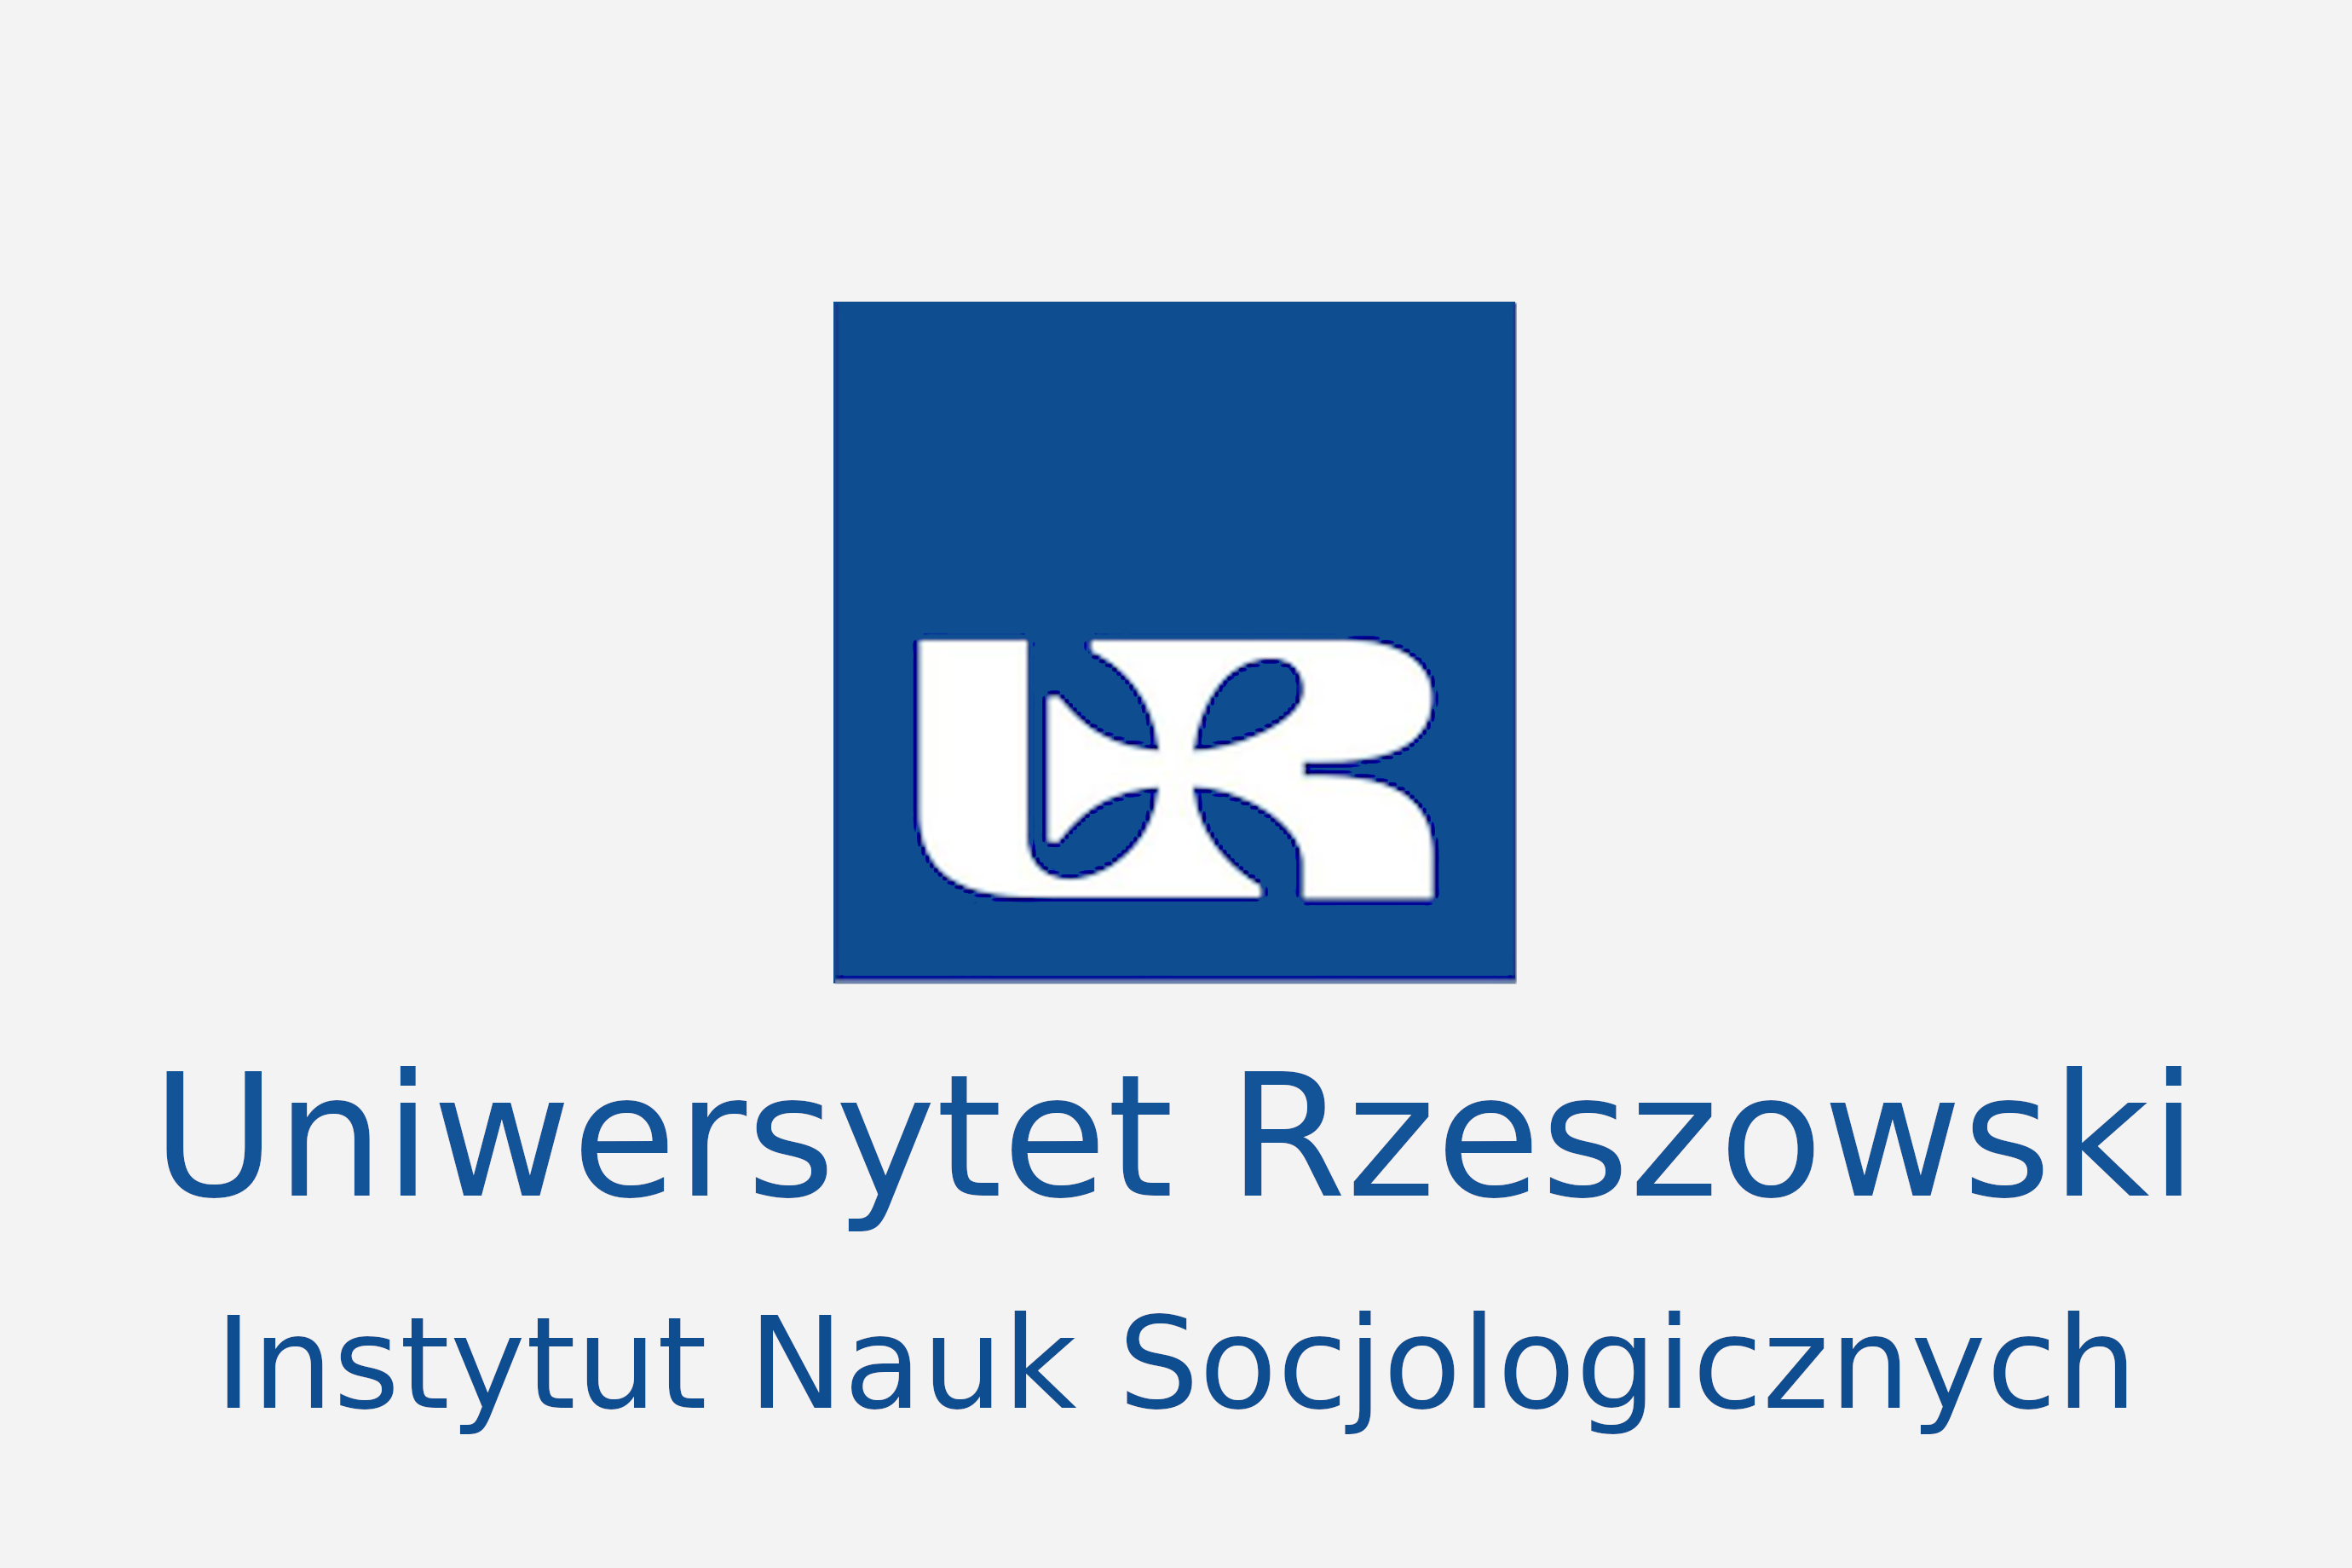 Urz logo.jpg [523.78 KB]